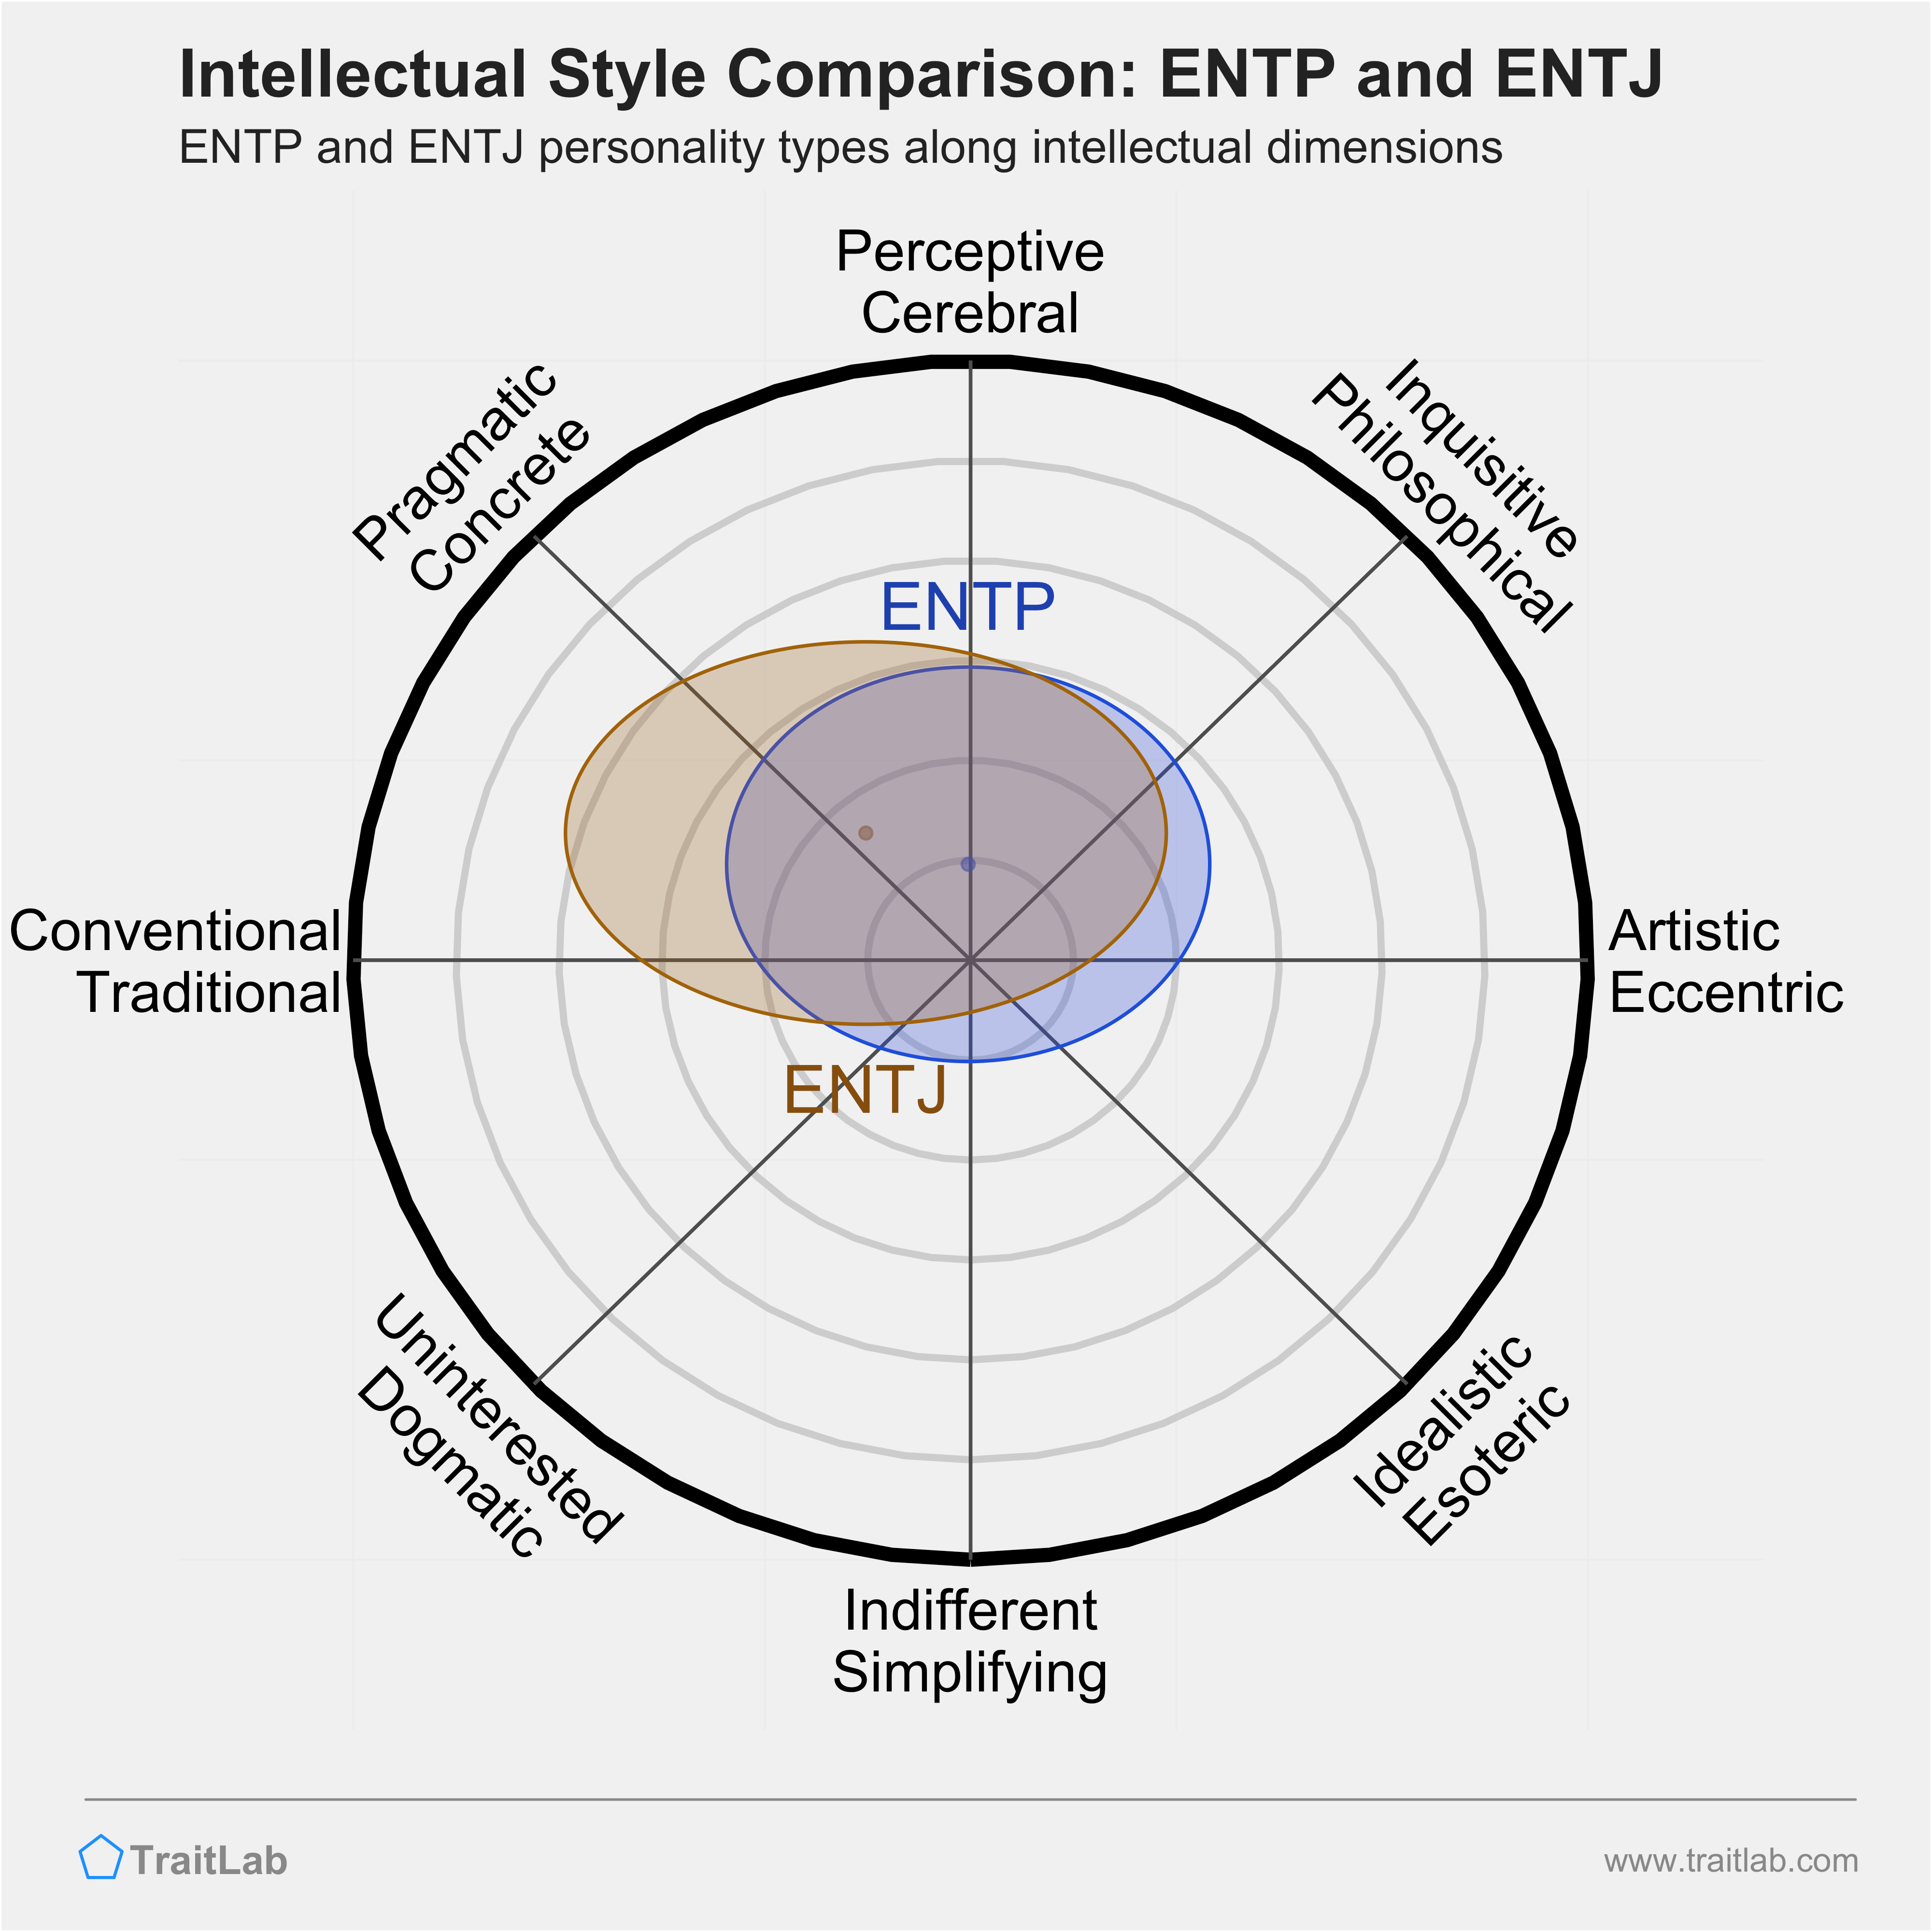 ENTP and ENTJ comparison across intellectual dimensions